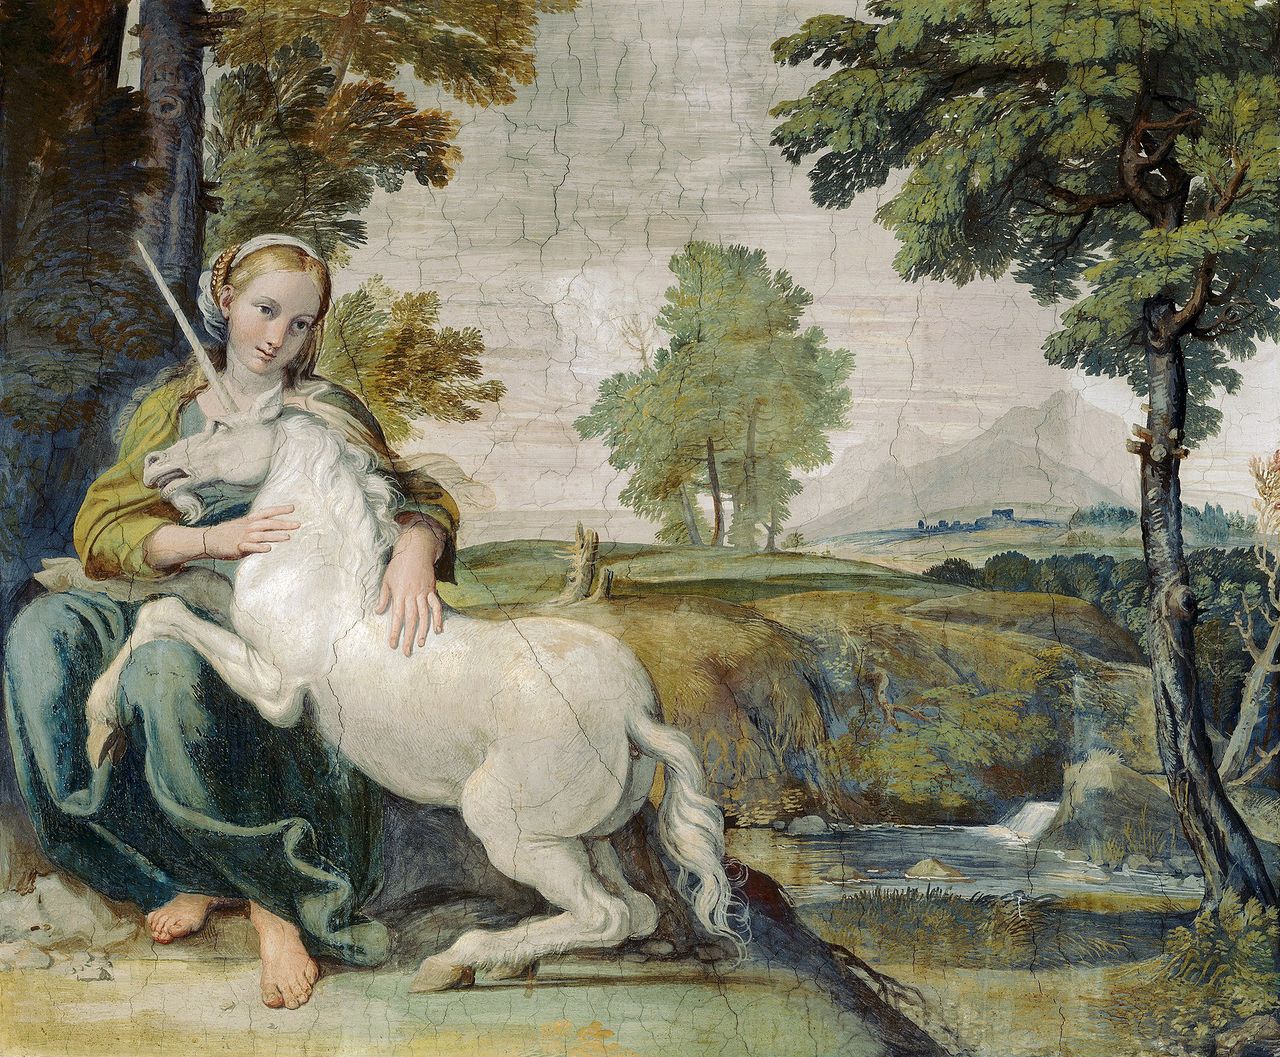 Młoda kobieta z jednorożcem — fresk w Palazzo Farnese w Rzymie